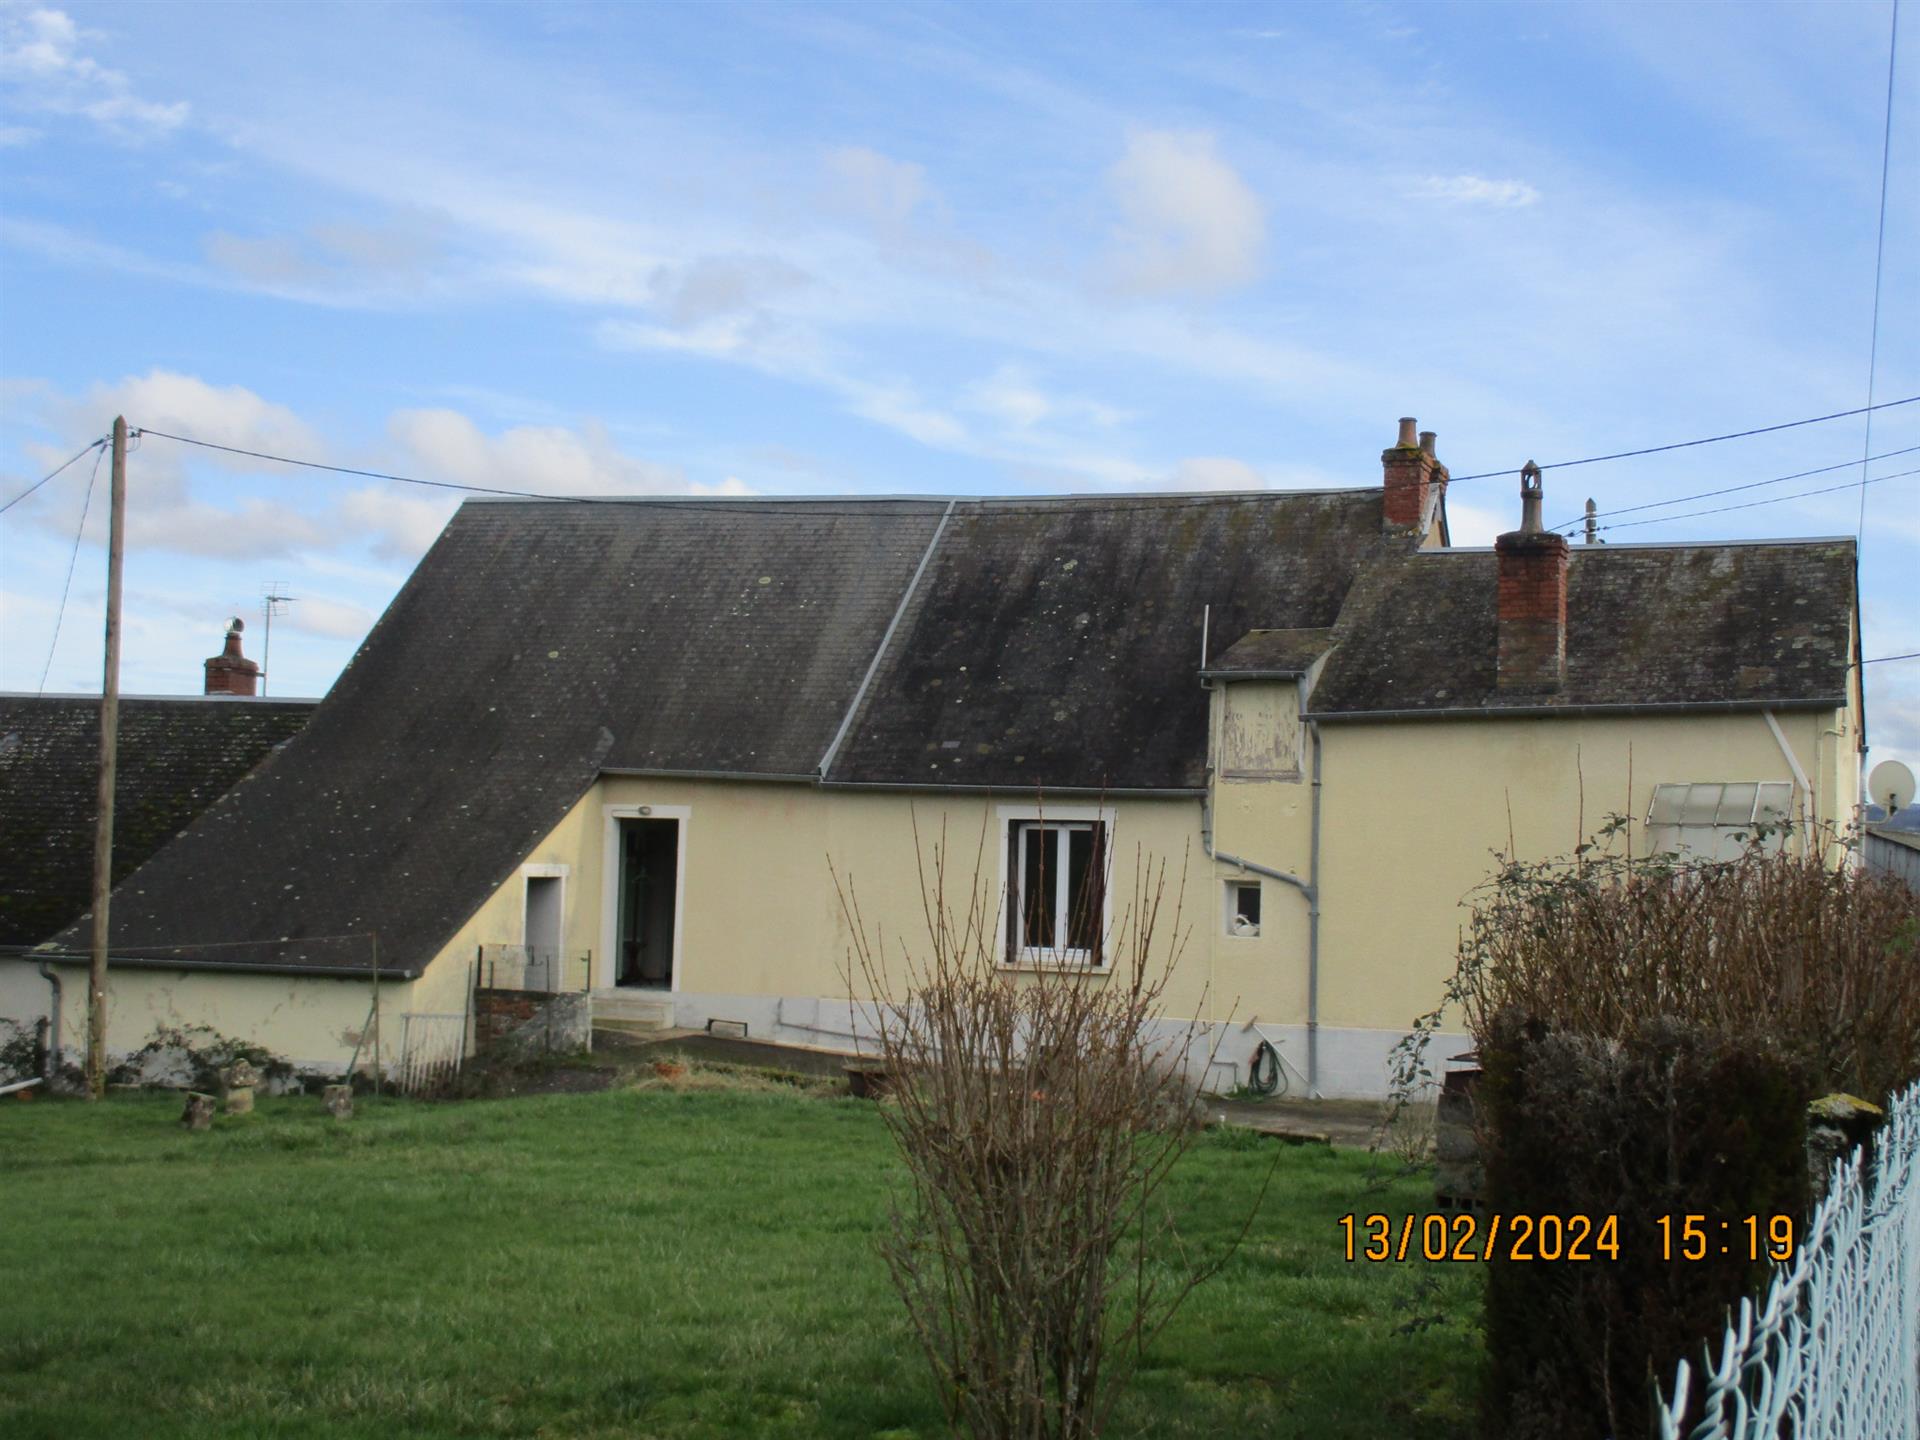 8Km Château-Chinon, village house, garden, garage (Ref.6)